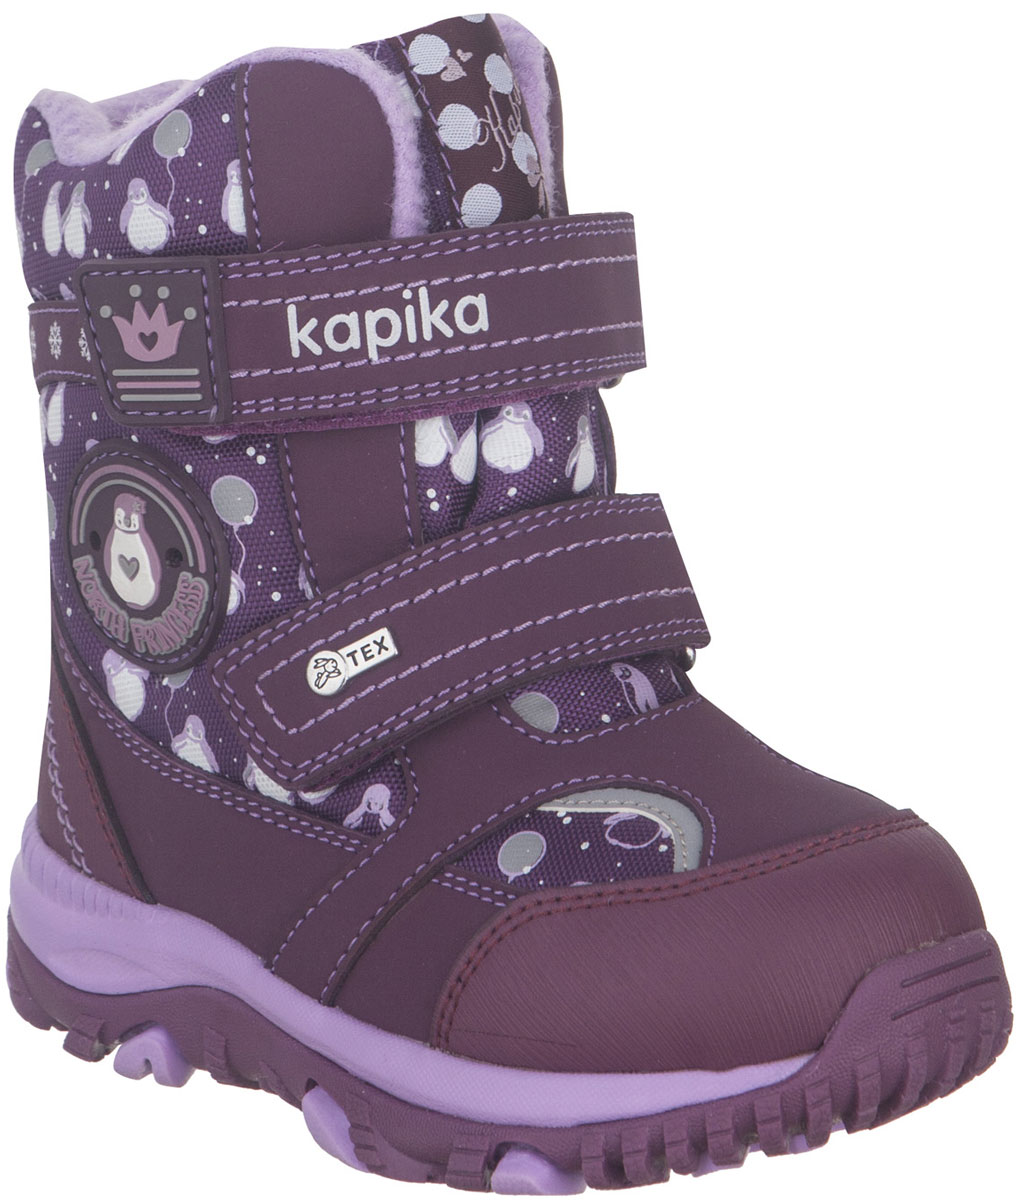 Ботинки для девочки Kapika, цвет: фиолетовый, сиреневый. 41224-1. Размер 25